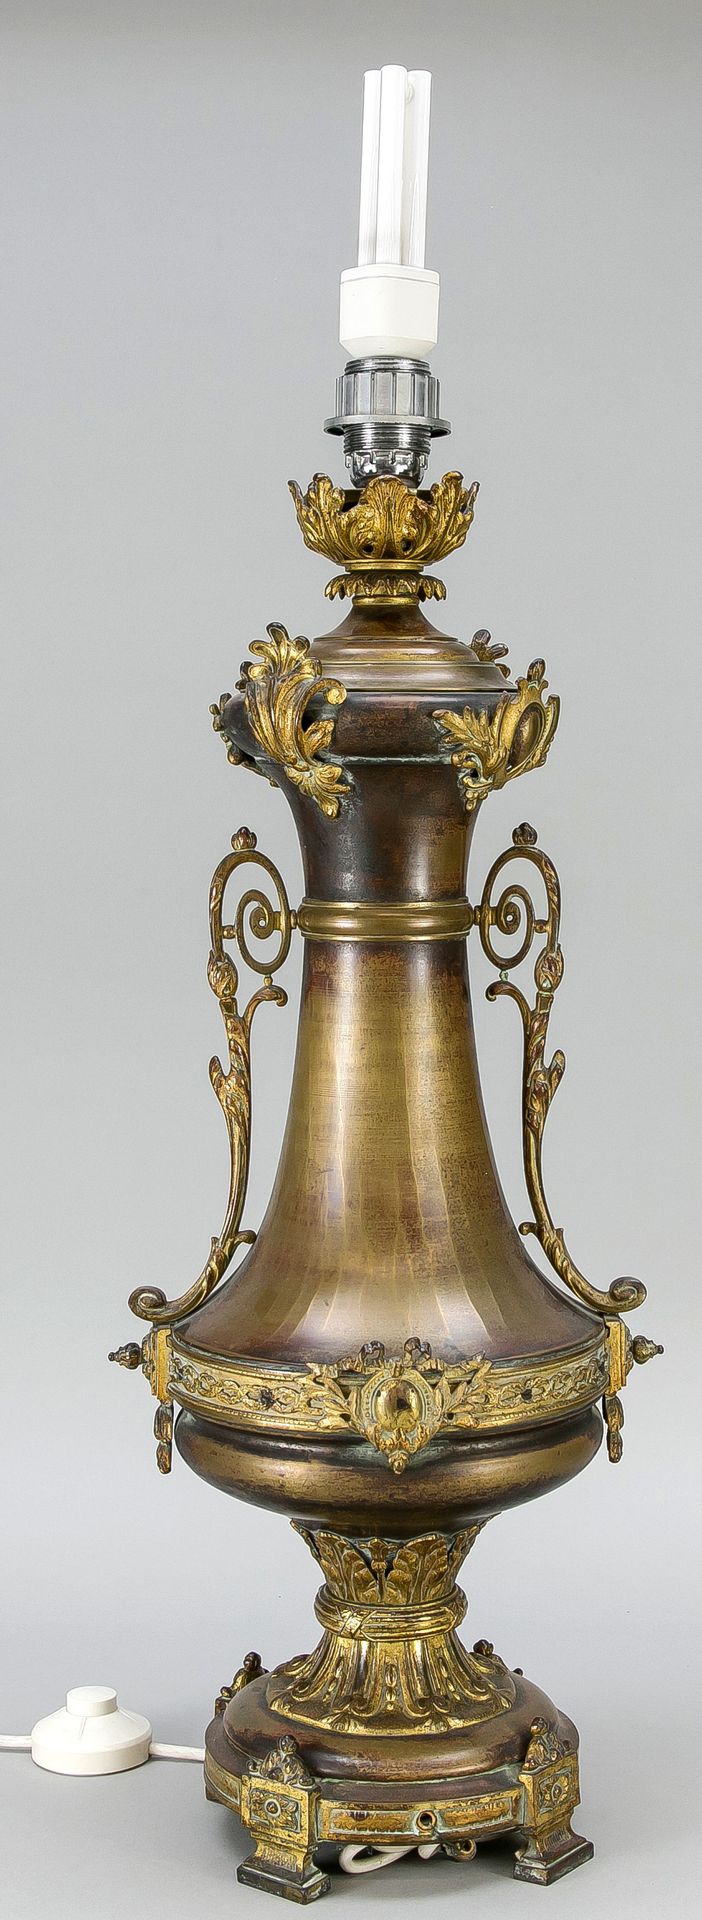 Null 大花瓶灯，19世纪末，黄铜，青铜，残留的镀金。圆形底座，立柱脚，栏杆式装饰应用，高63厘米。